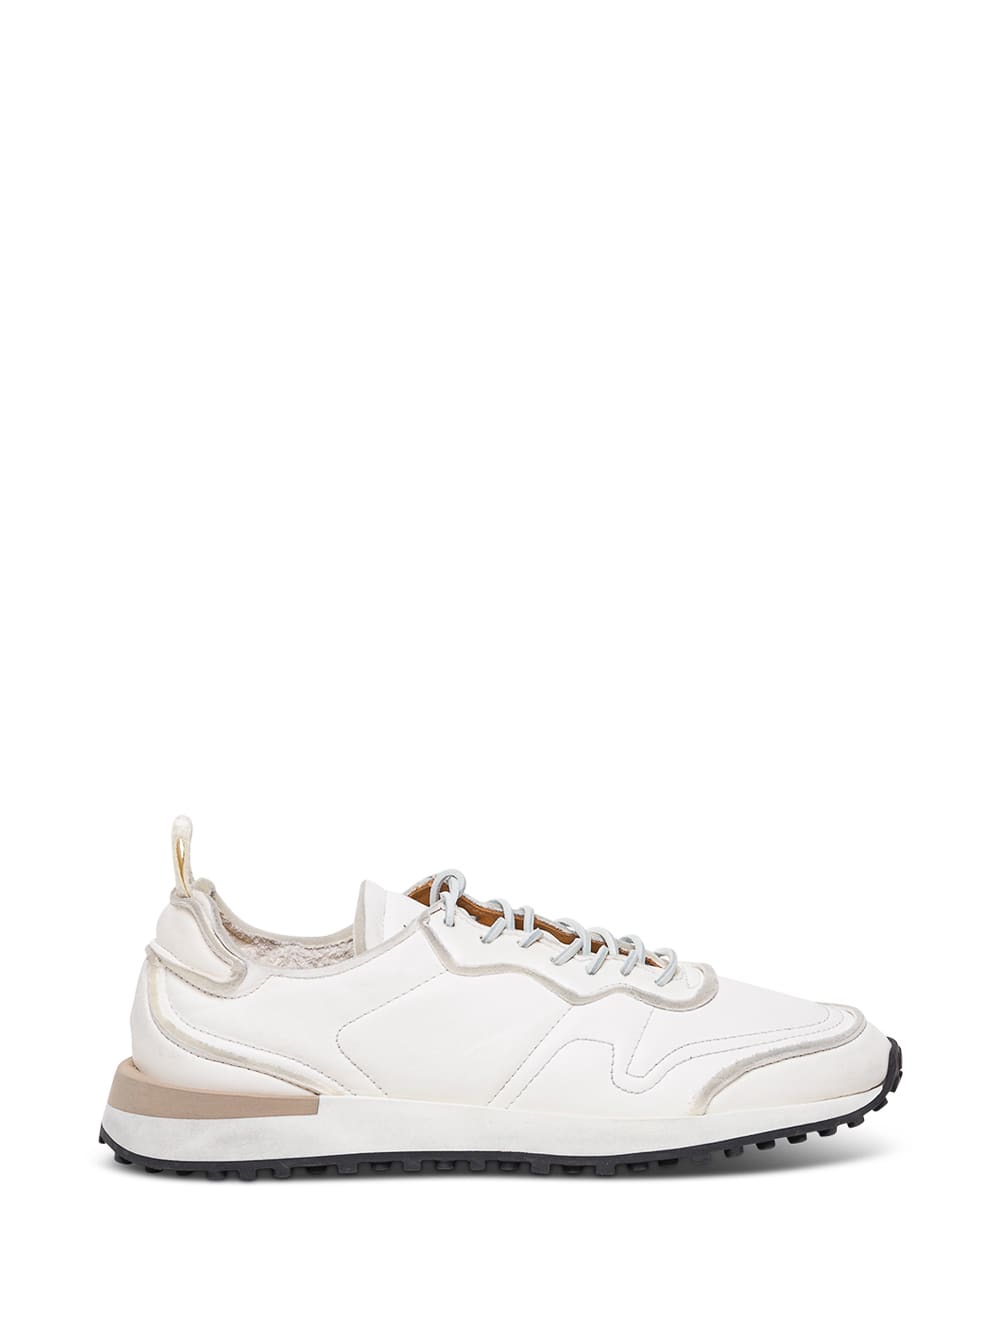 Buttero Futura White Leather Sneakers